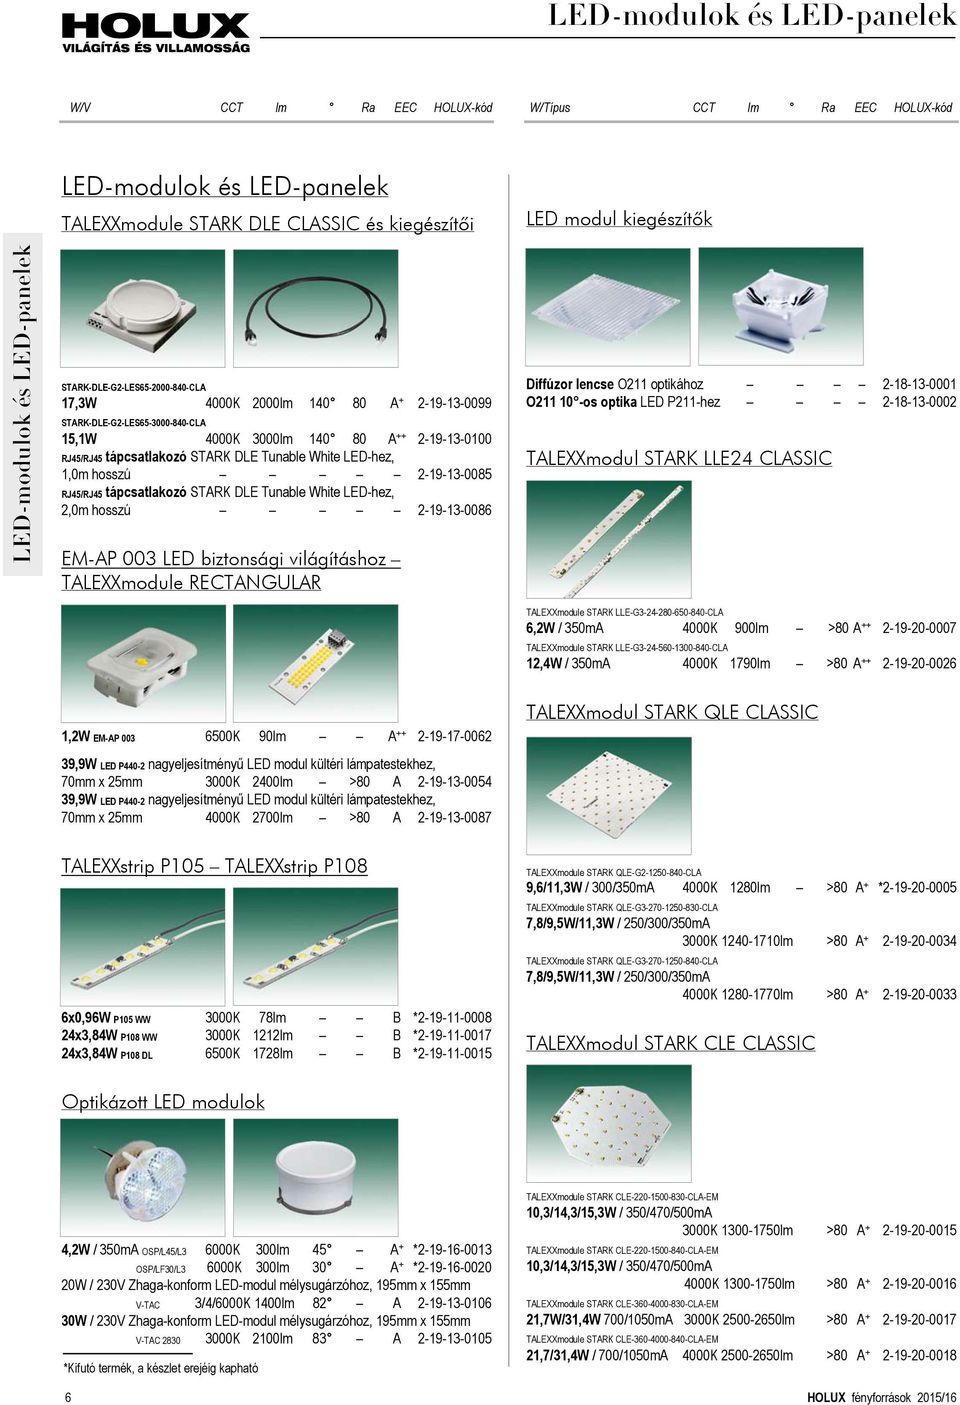 LED-hez, 1,0m hosszú 2-19-13-0085 RJ45/RJ45 tápcsatlakozó STARK DLE Tunable White LED-hez, 2,0m hosszú 2-19-13-0086 EM-AP 003 LED biztonsági világításhoz TALEXXmodule RECTANGULAR LED modul